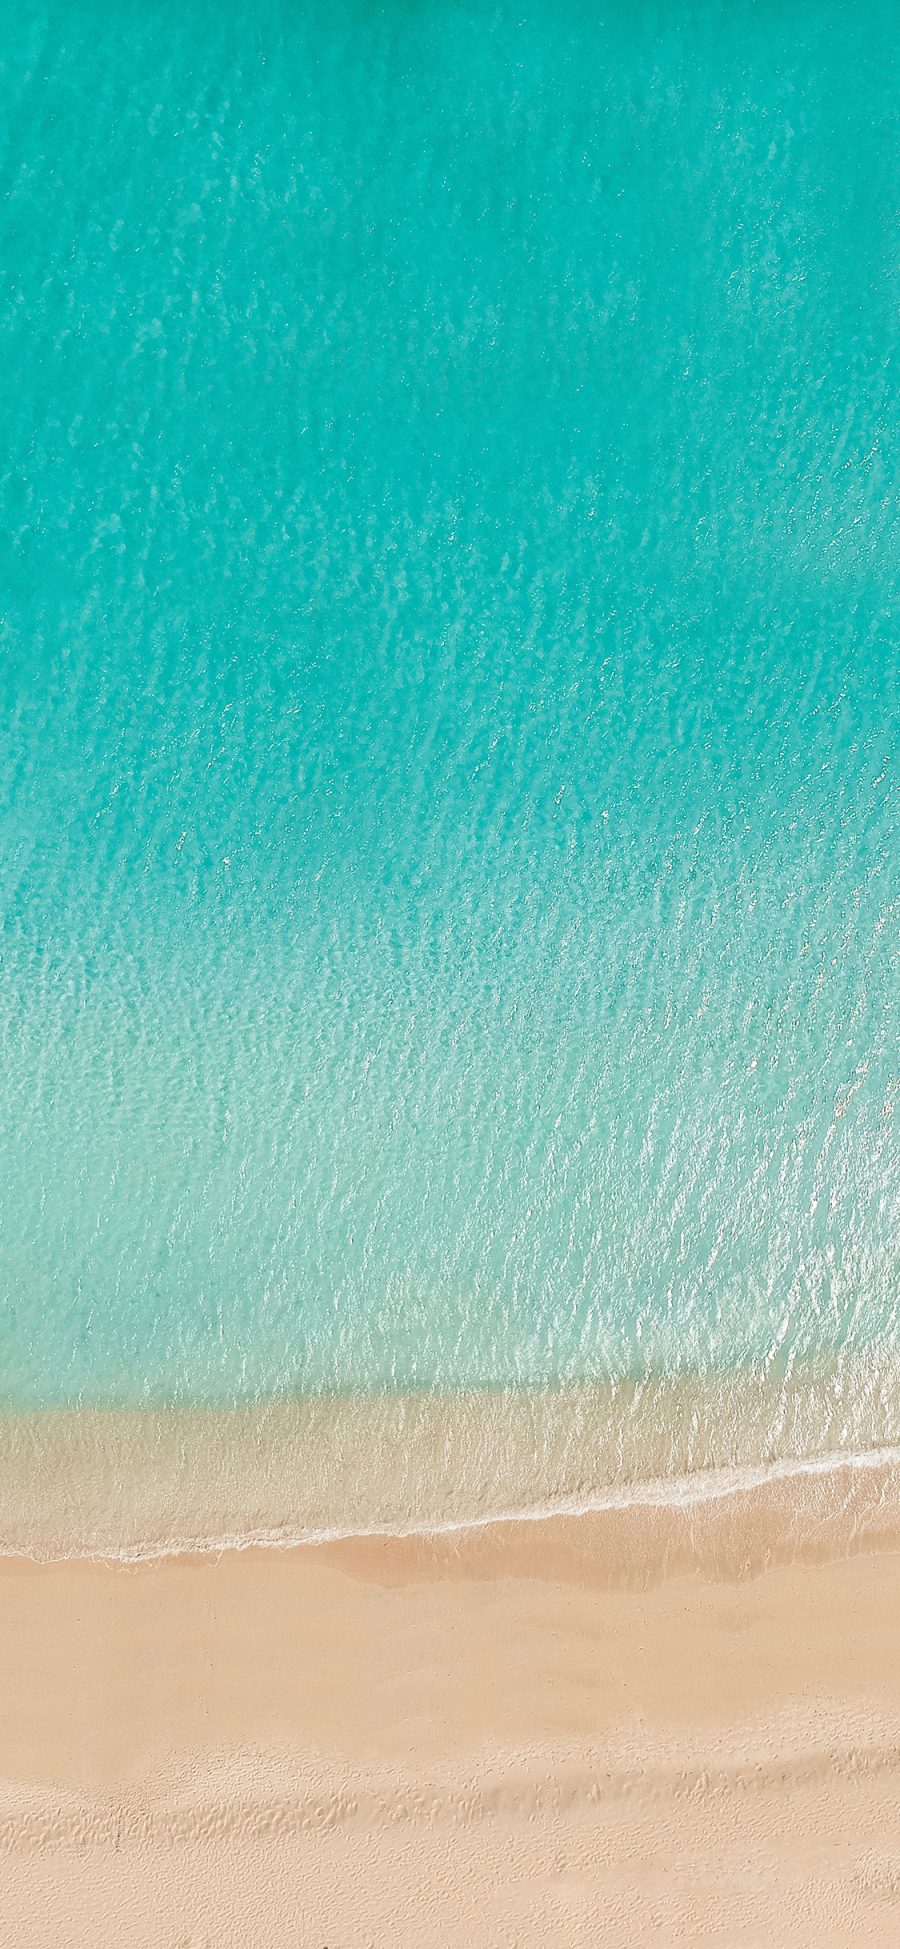 [2436×1125]海洋 海水 沙滩 清澈 苹果手机壁纸图片